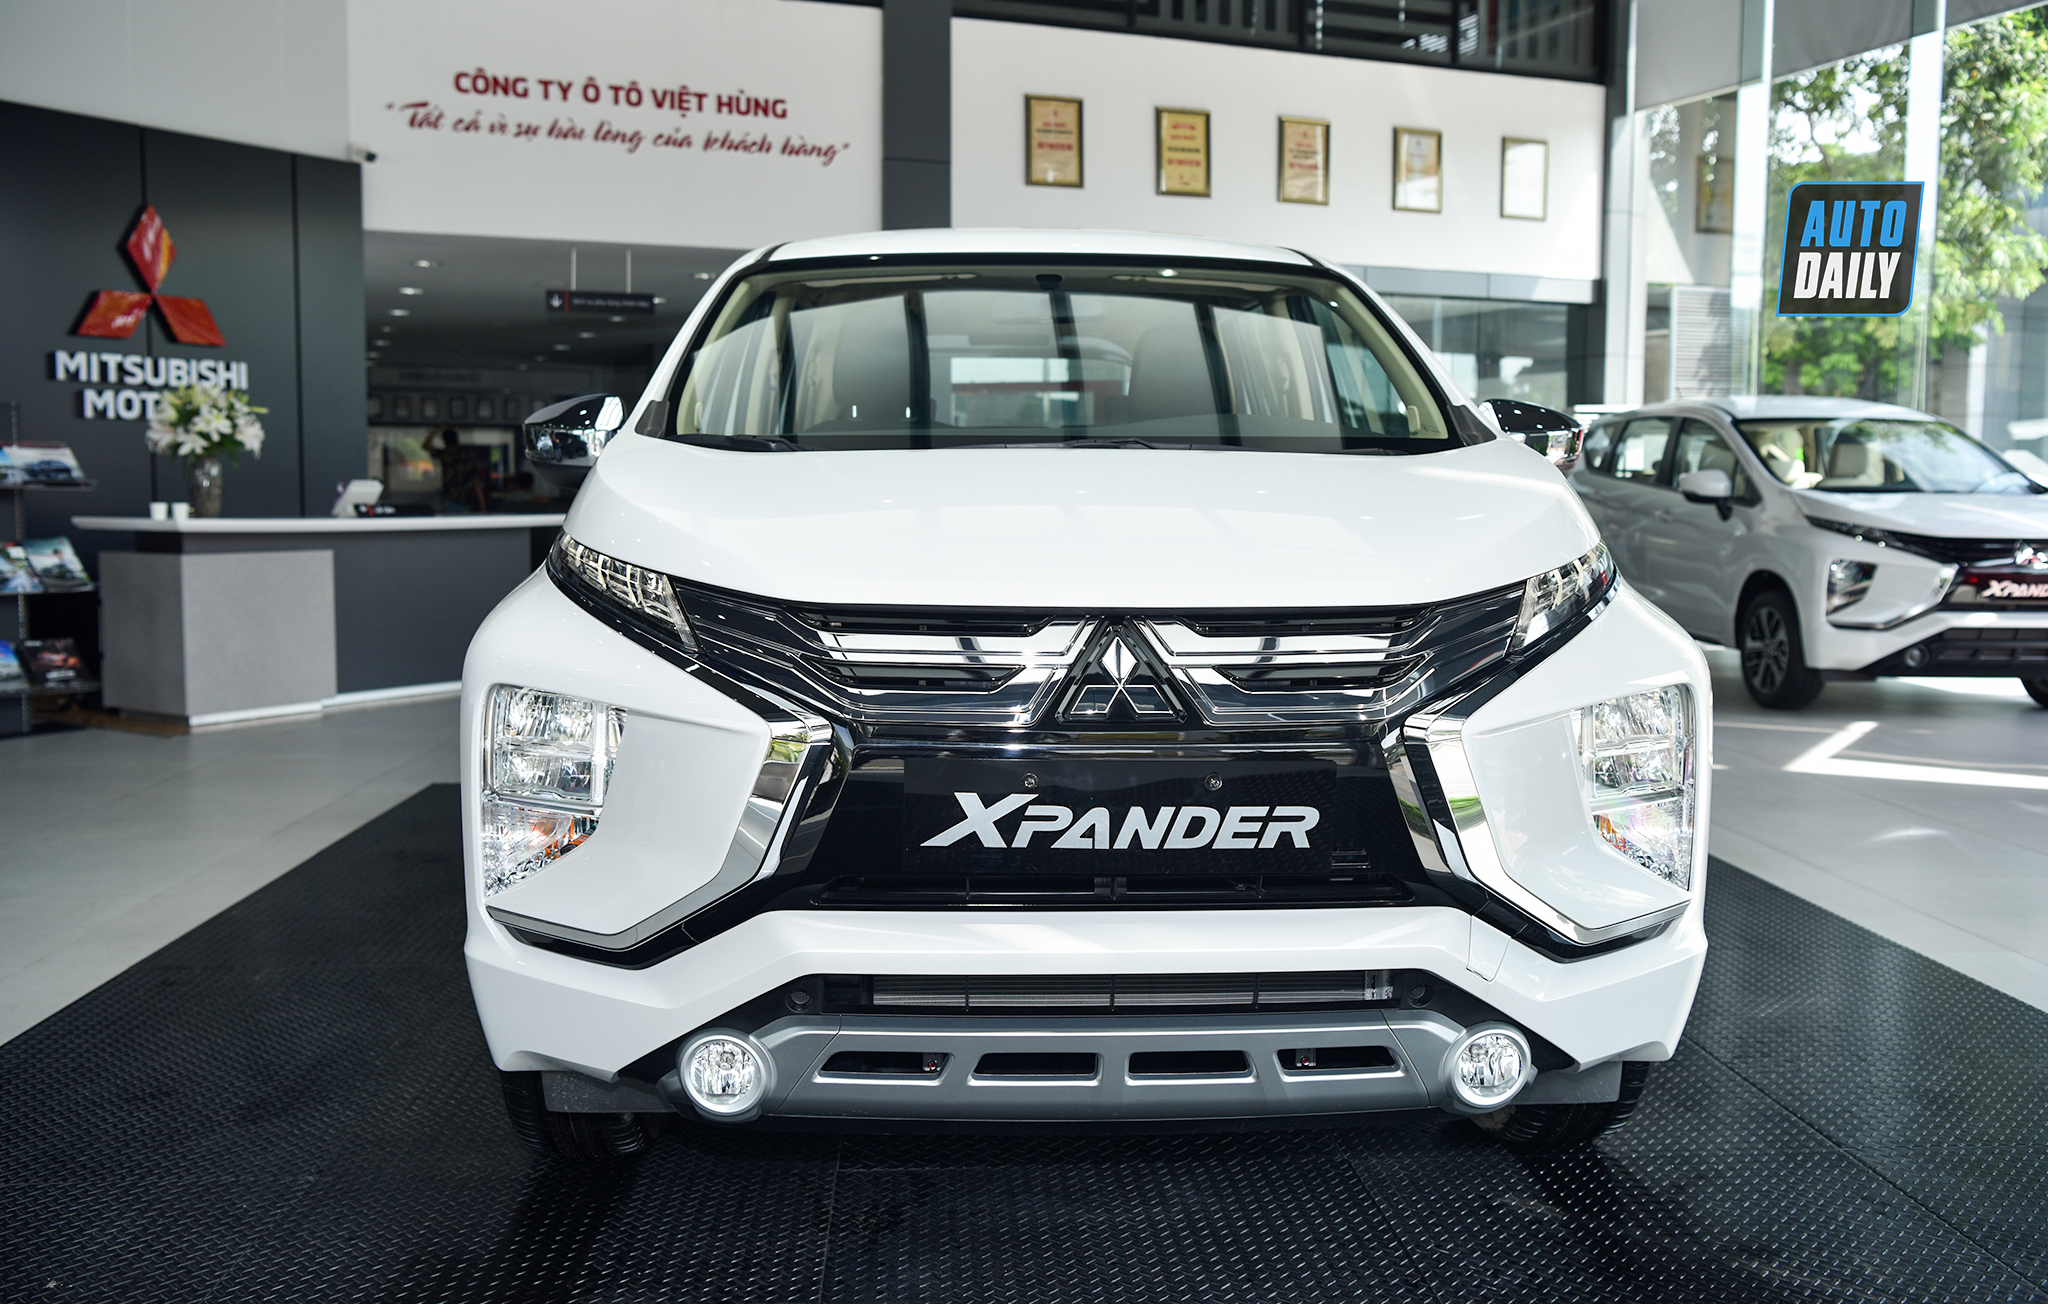 Mitsubishi Xpander bản nhập khẩu được hỗ trợ 50% phí trước bạ mitsubishi-xpander-2020-autodaily-016.jpg